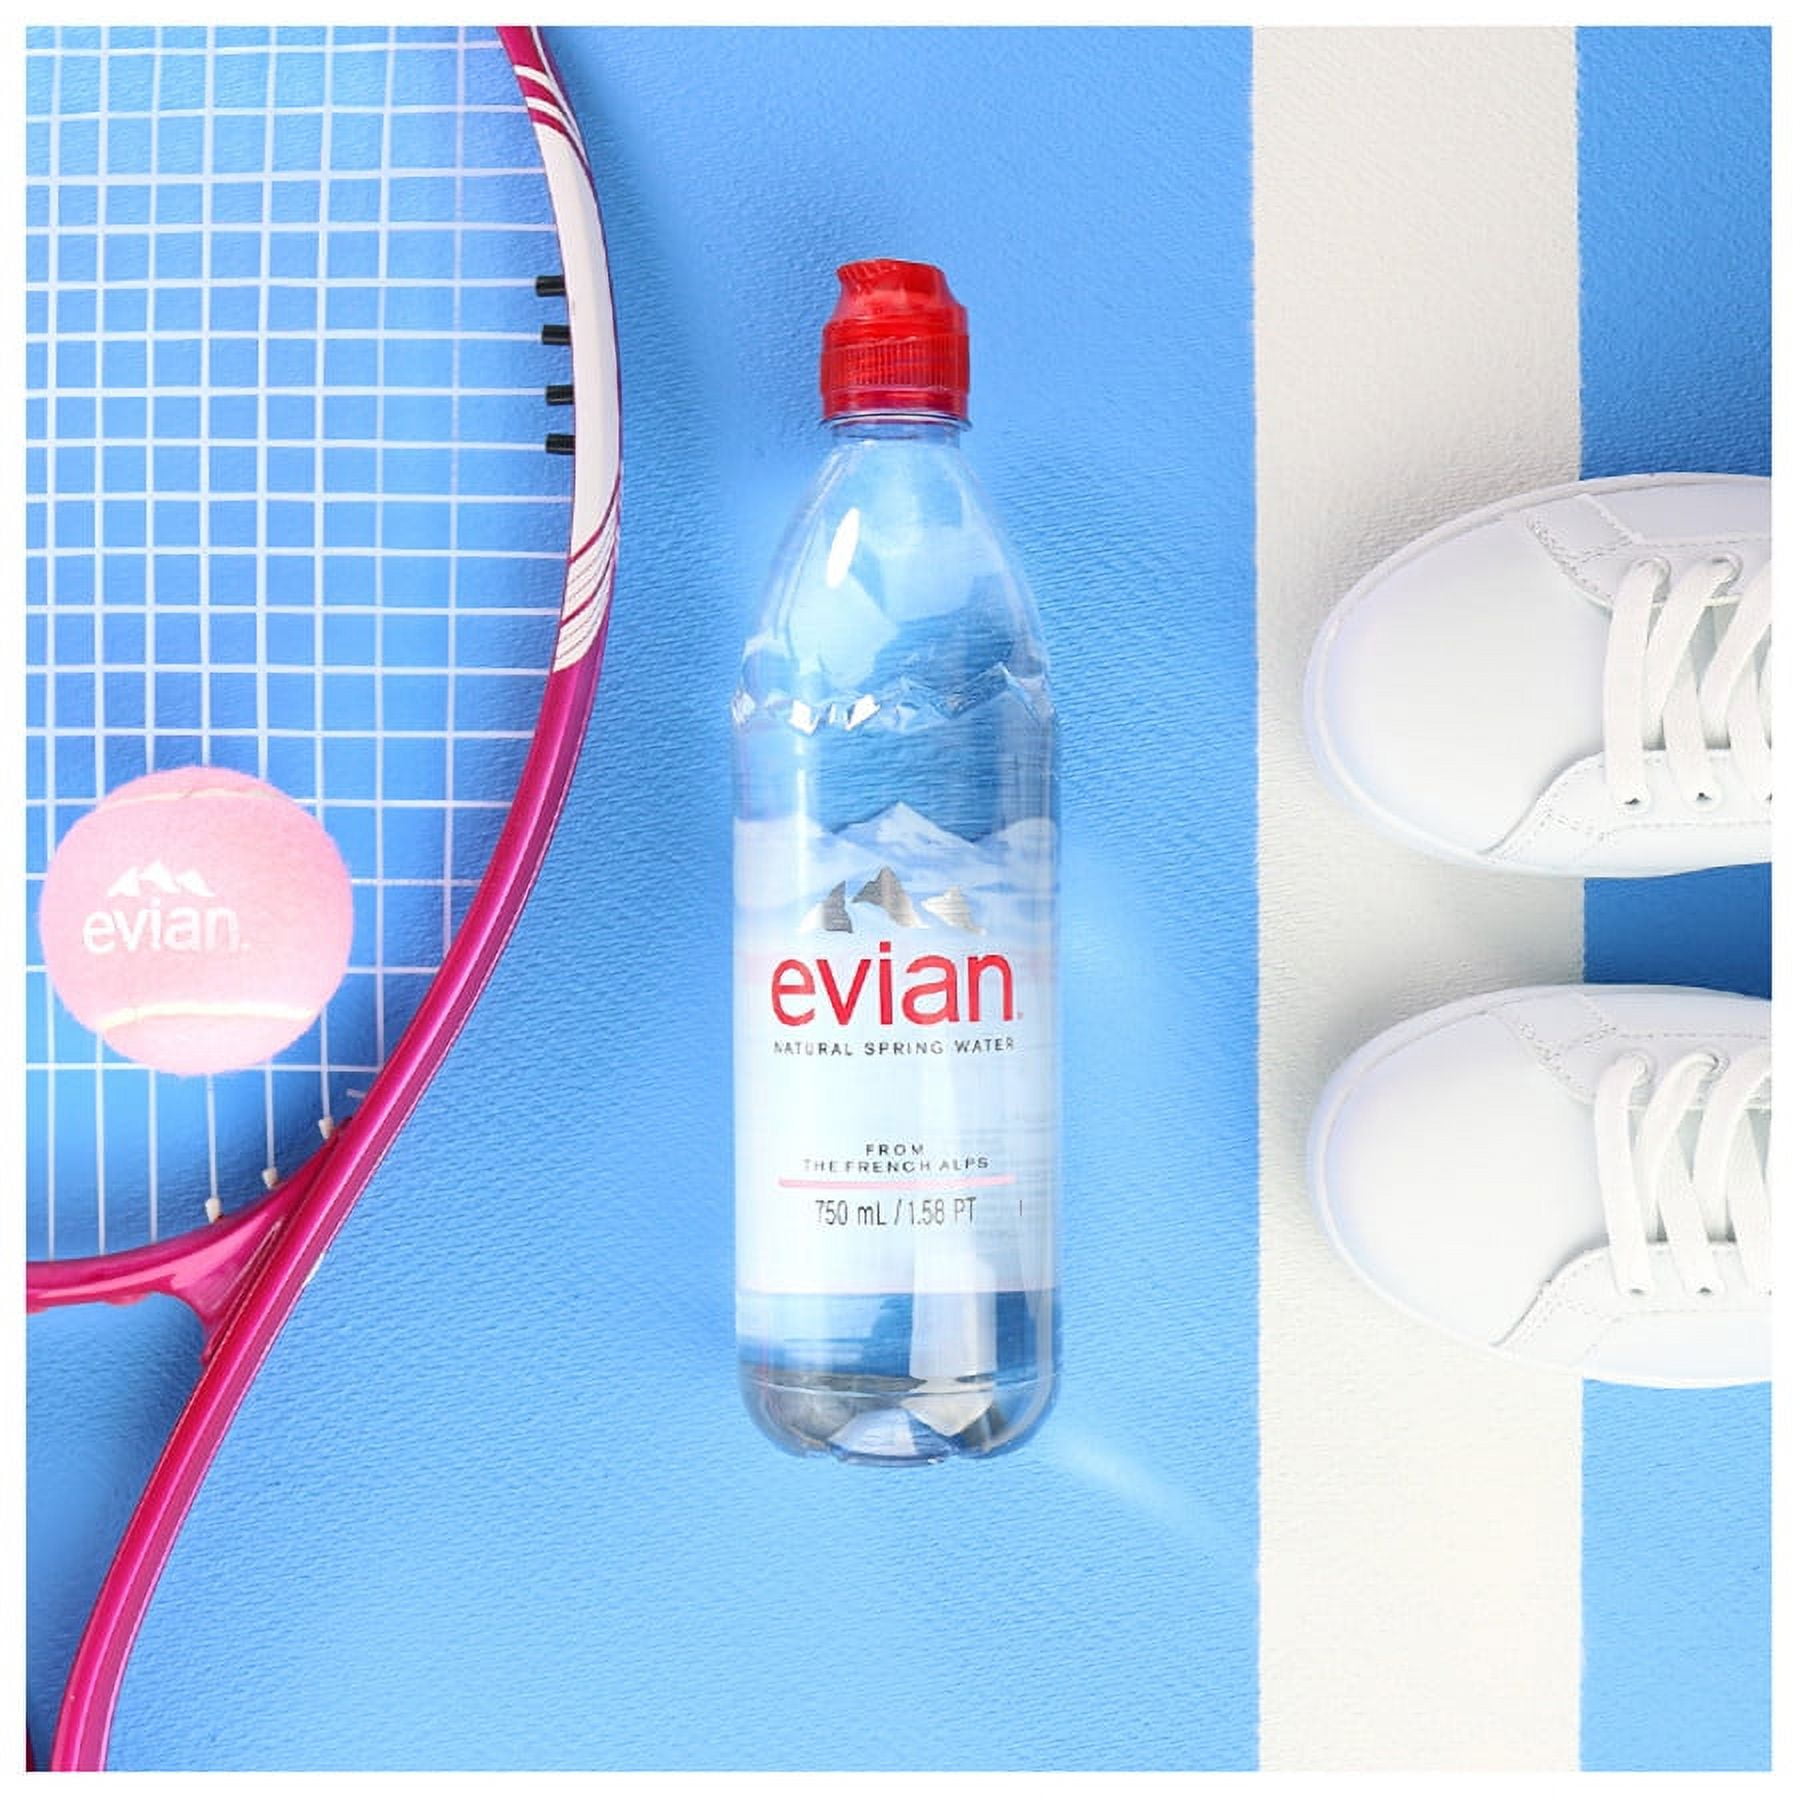 Evian Natural Spring Water 6 pack/16 oz plastic - Beverages2u